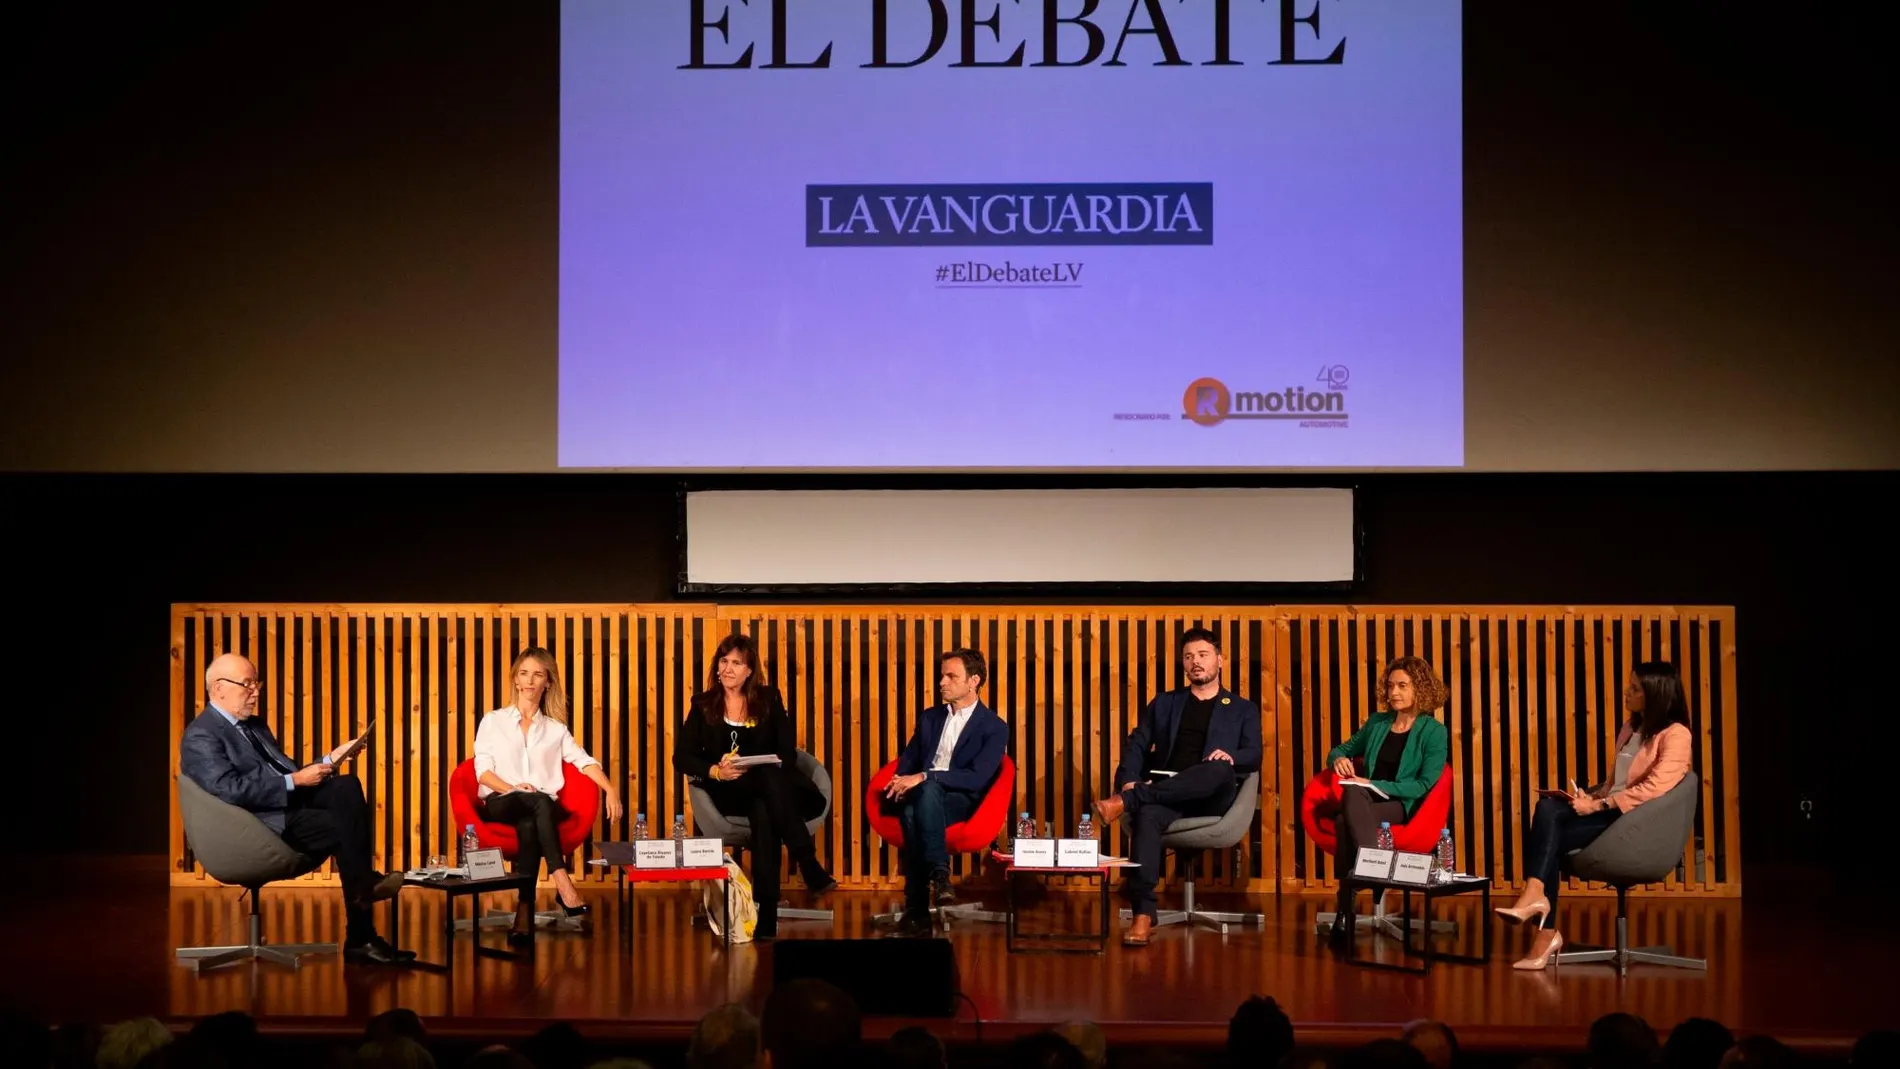 El primer debate entre los candidatos, organizado por “La Vanguardia”